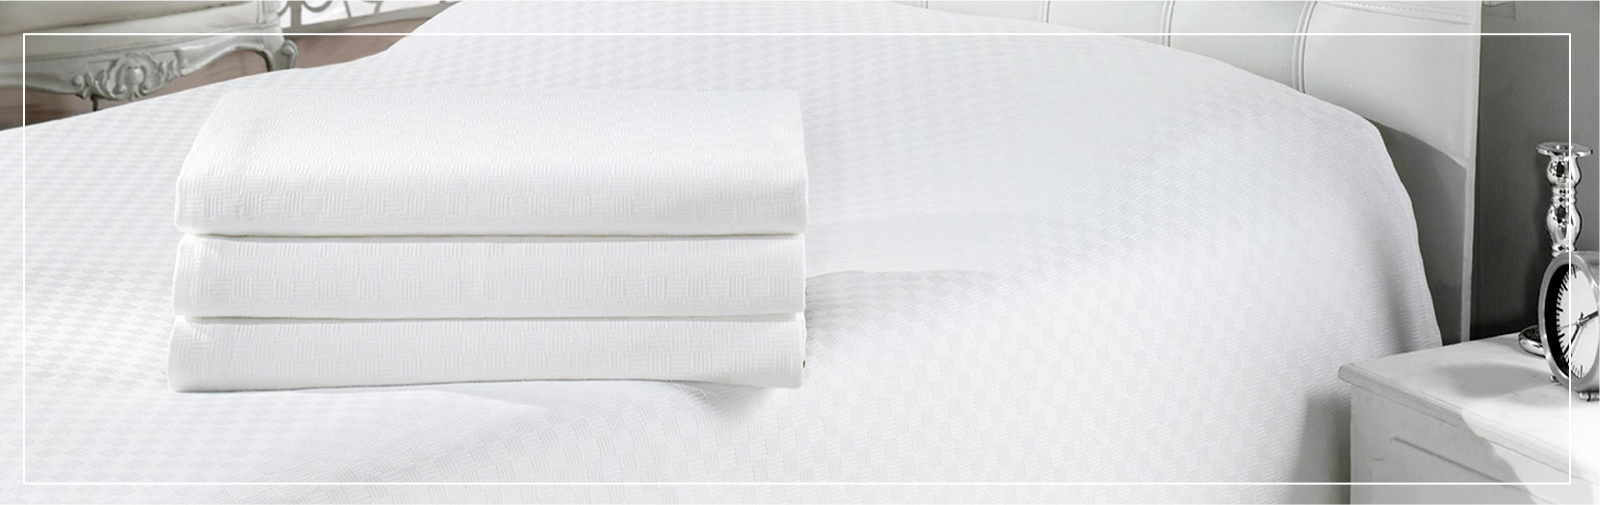 Renting de tèxtils per a hotels